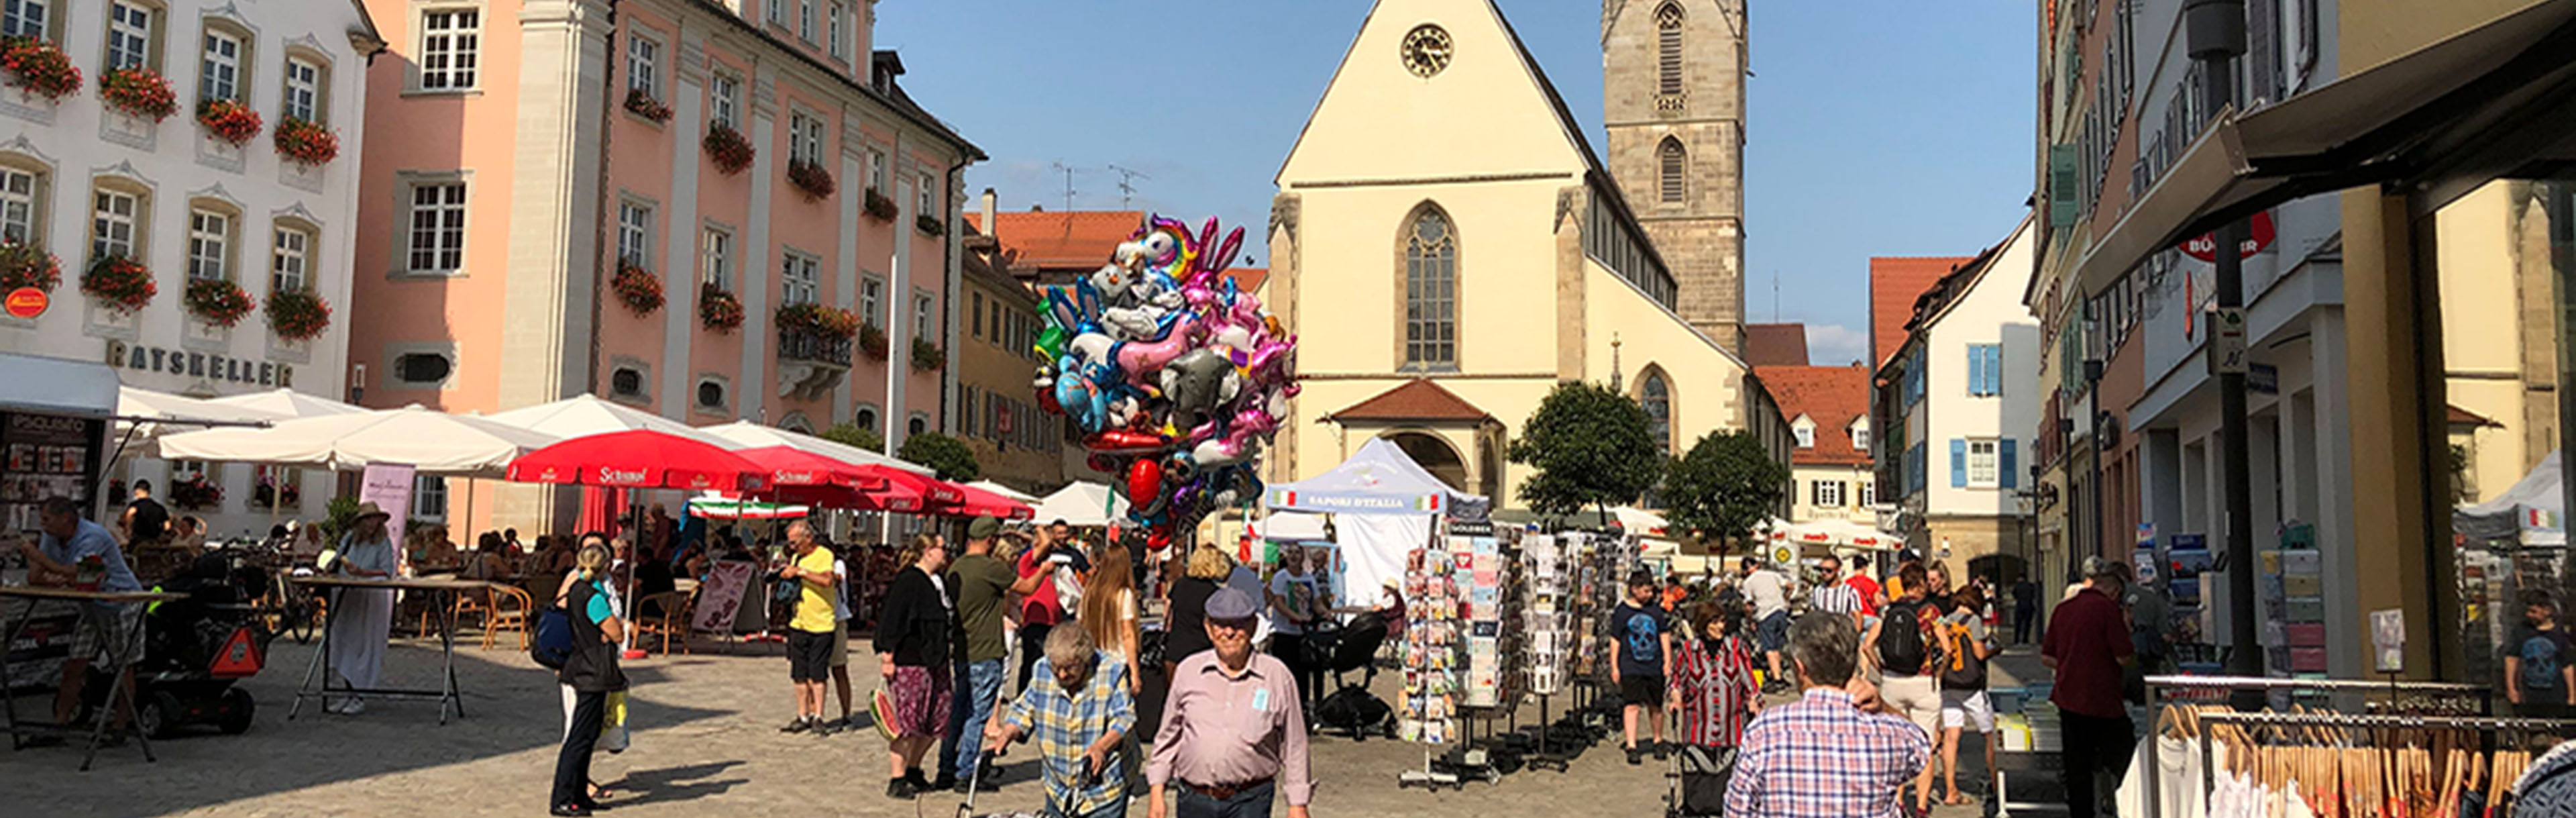 Luftballons und Menschen auf dem Marktplatz